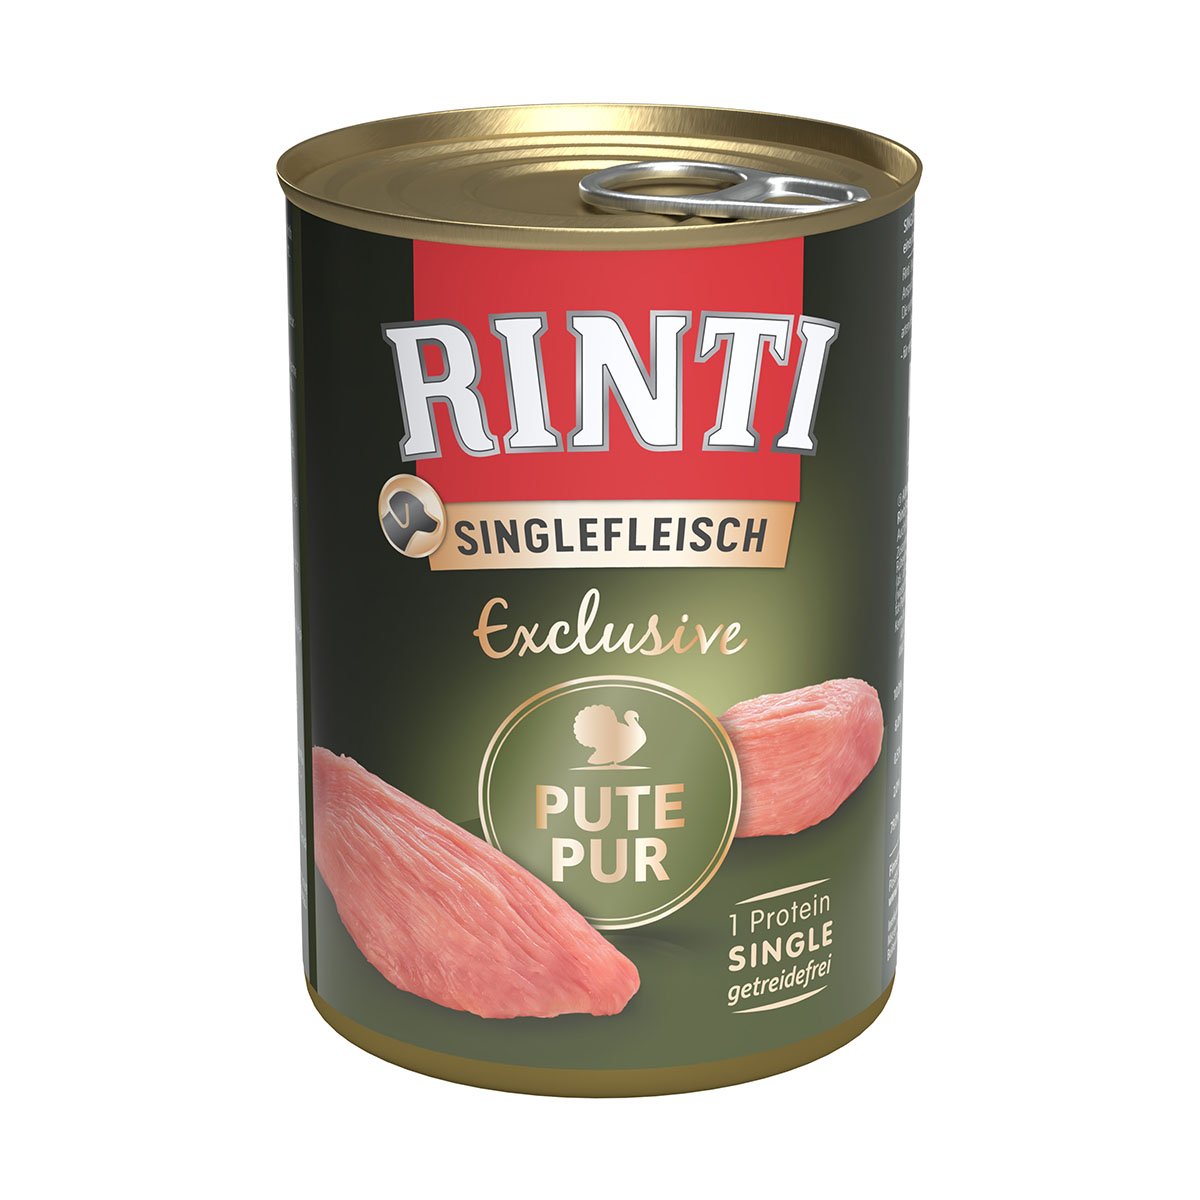 Rinti Singlefleisch Exclusive Pute pur 12x400g von Rinti